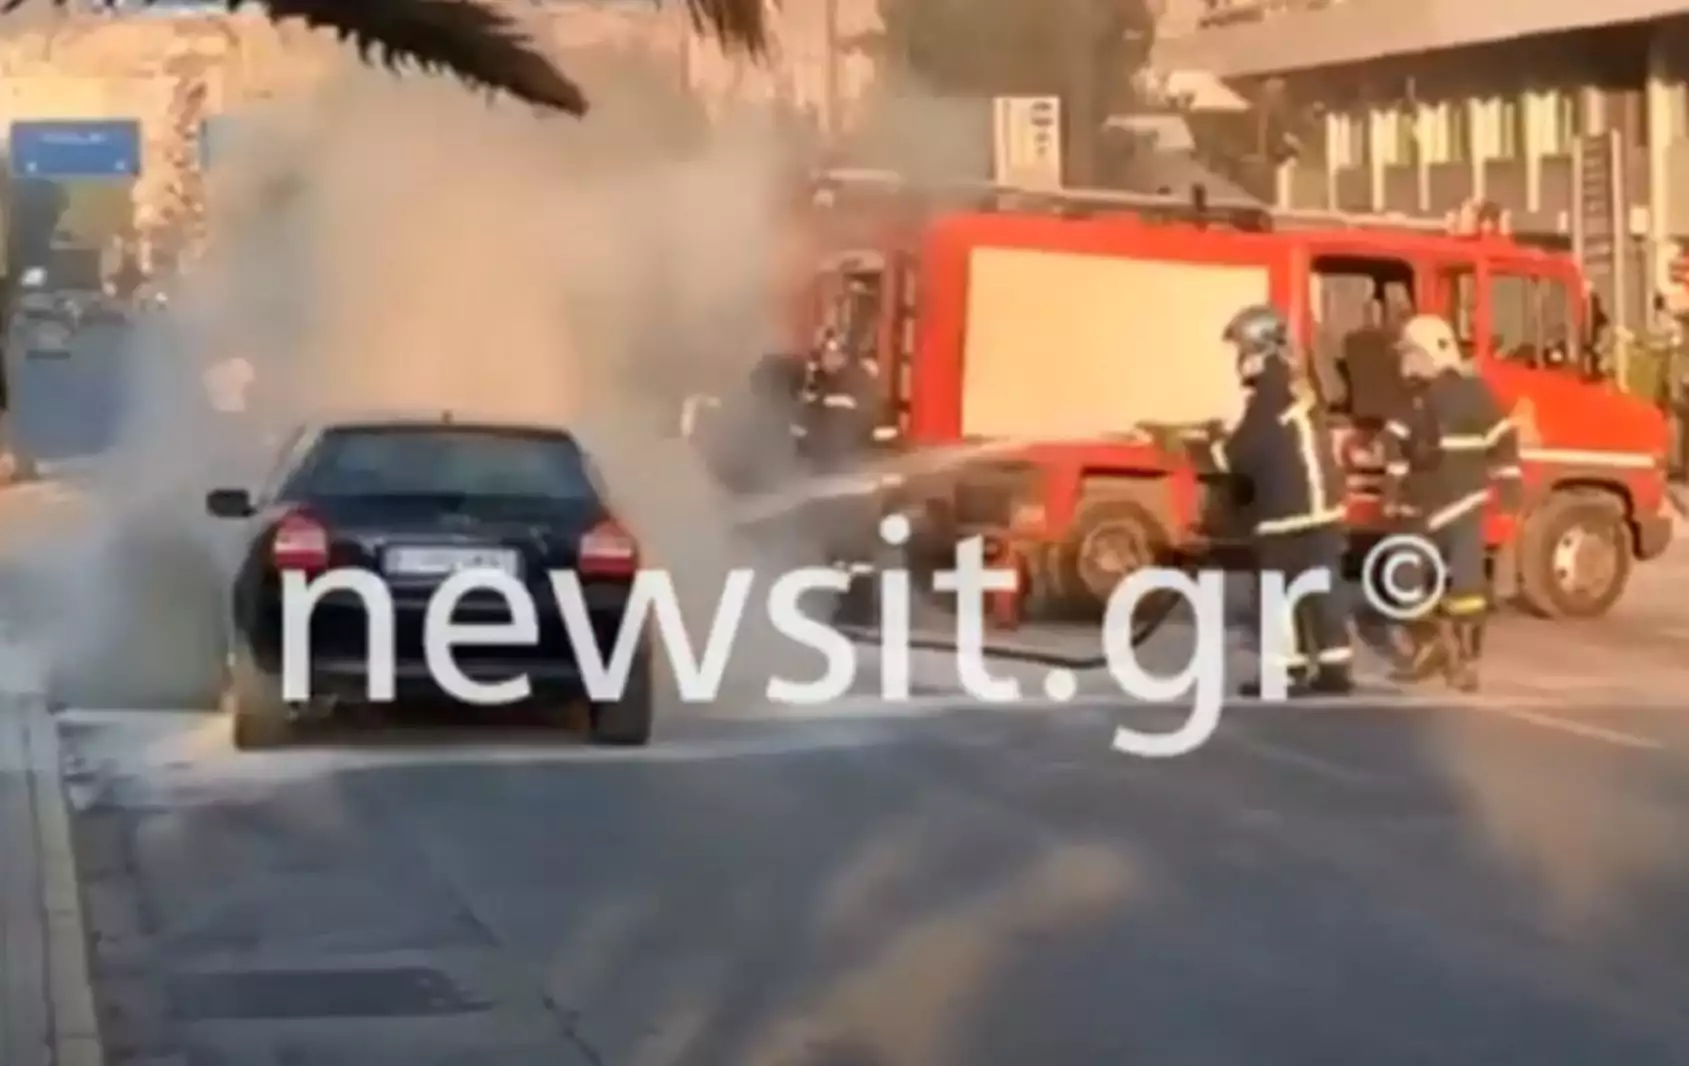 Αθήνα: Τυλίχθηκε στις φλόγες αυτοκίνητο εν κινήσει στη Λεωφόρο Αλεξάνδρας